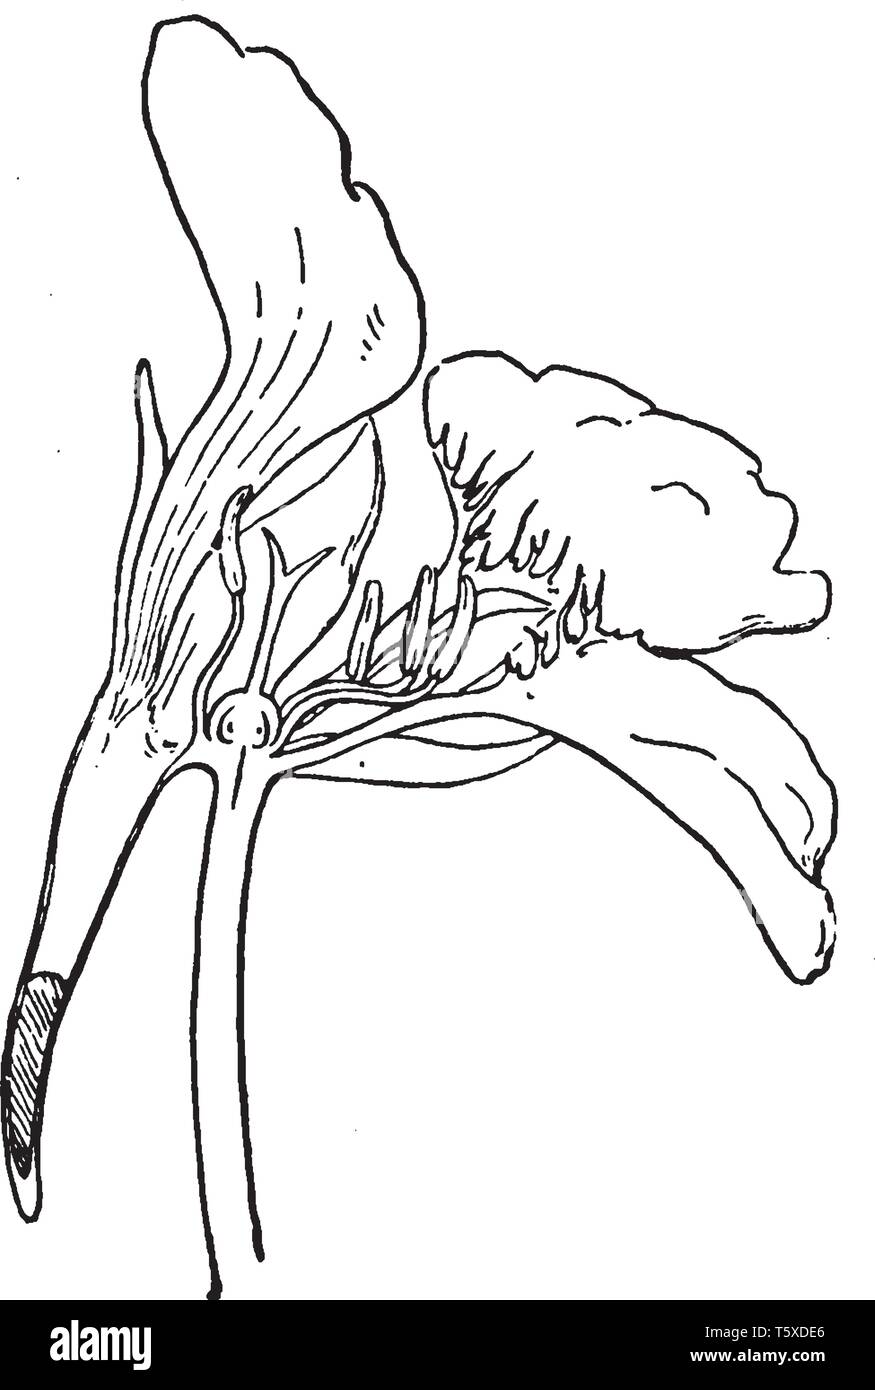 Das Bild zeigt die Kapuzinerkresse Blume, die durch die Mitte geschnitten wird zum Anzeigen des Teils und Nektar teil. Blütenblätter, Filamente, die Schande, die mit eierstock contai Stock Vektor